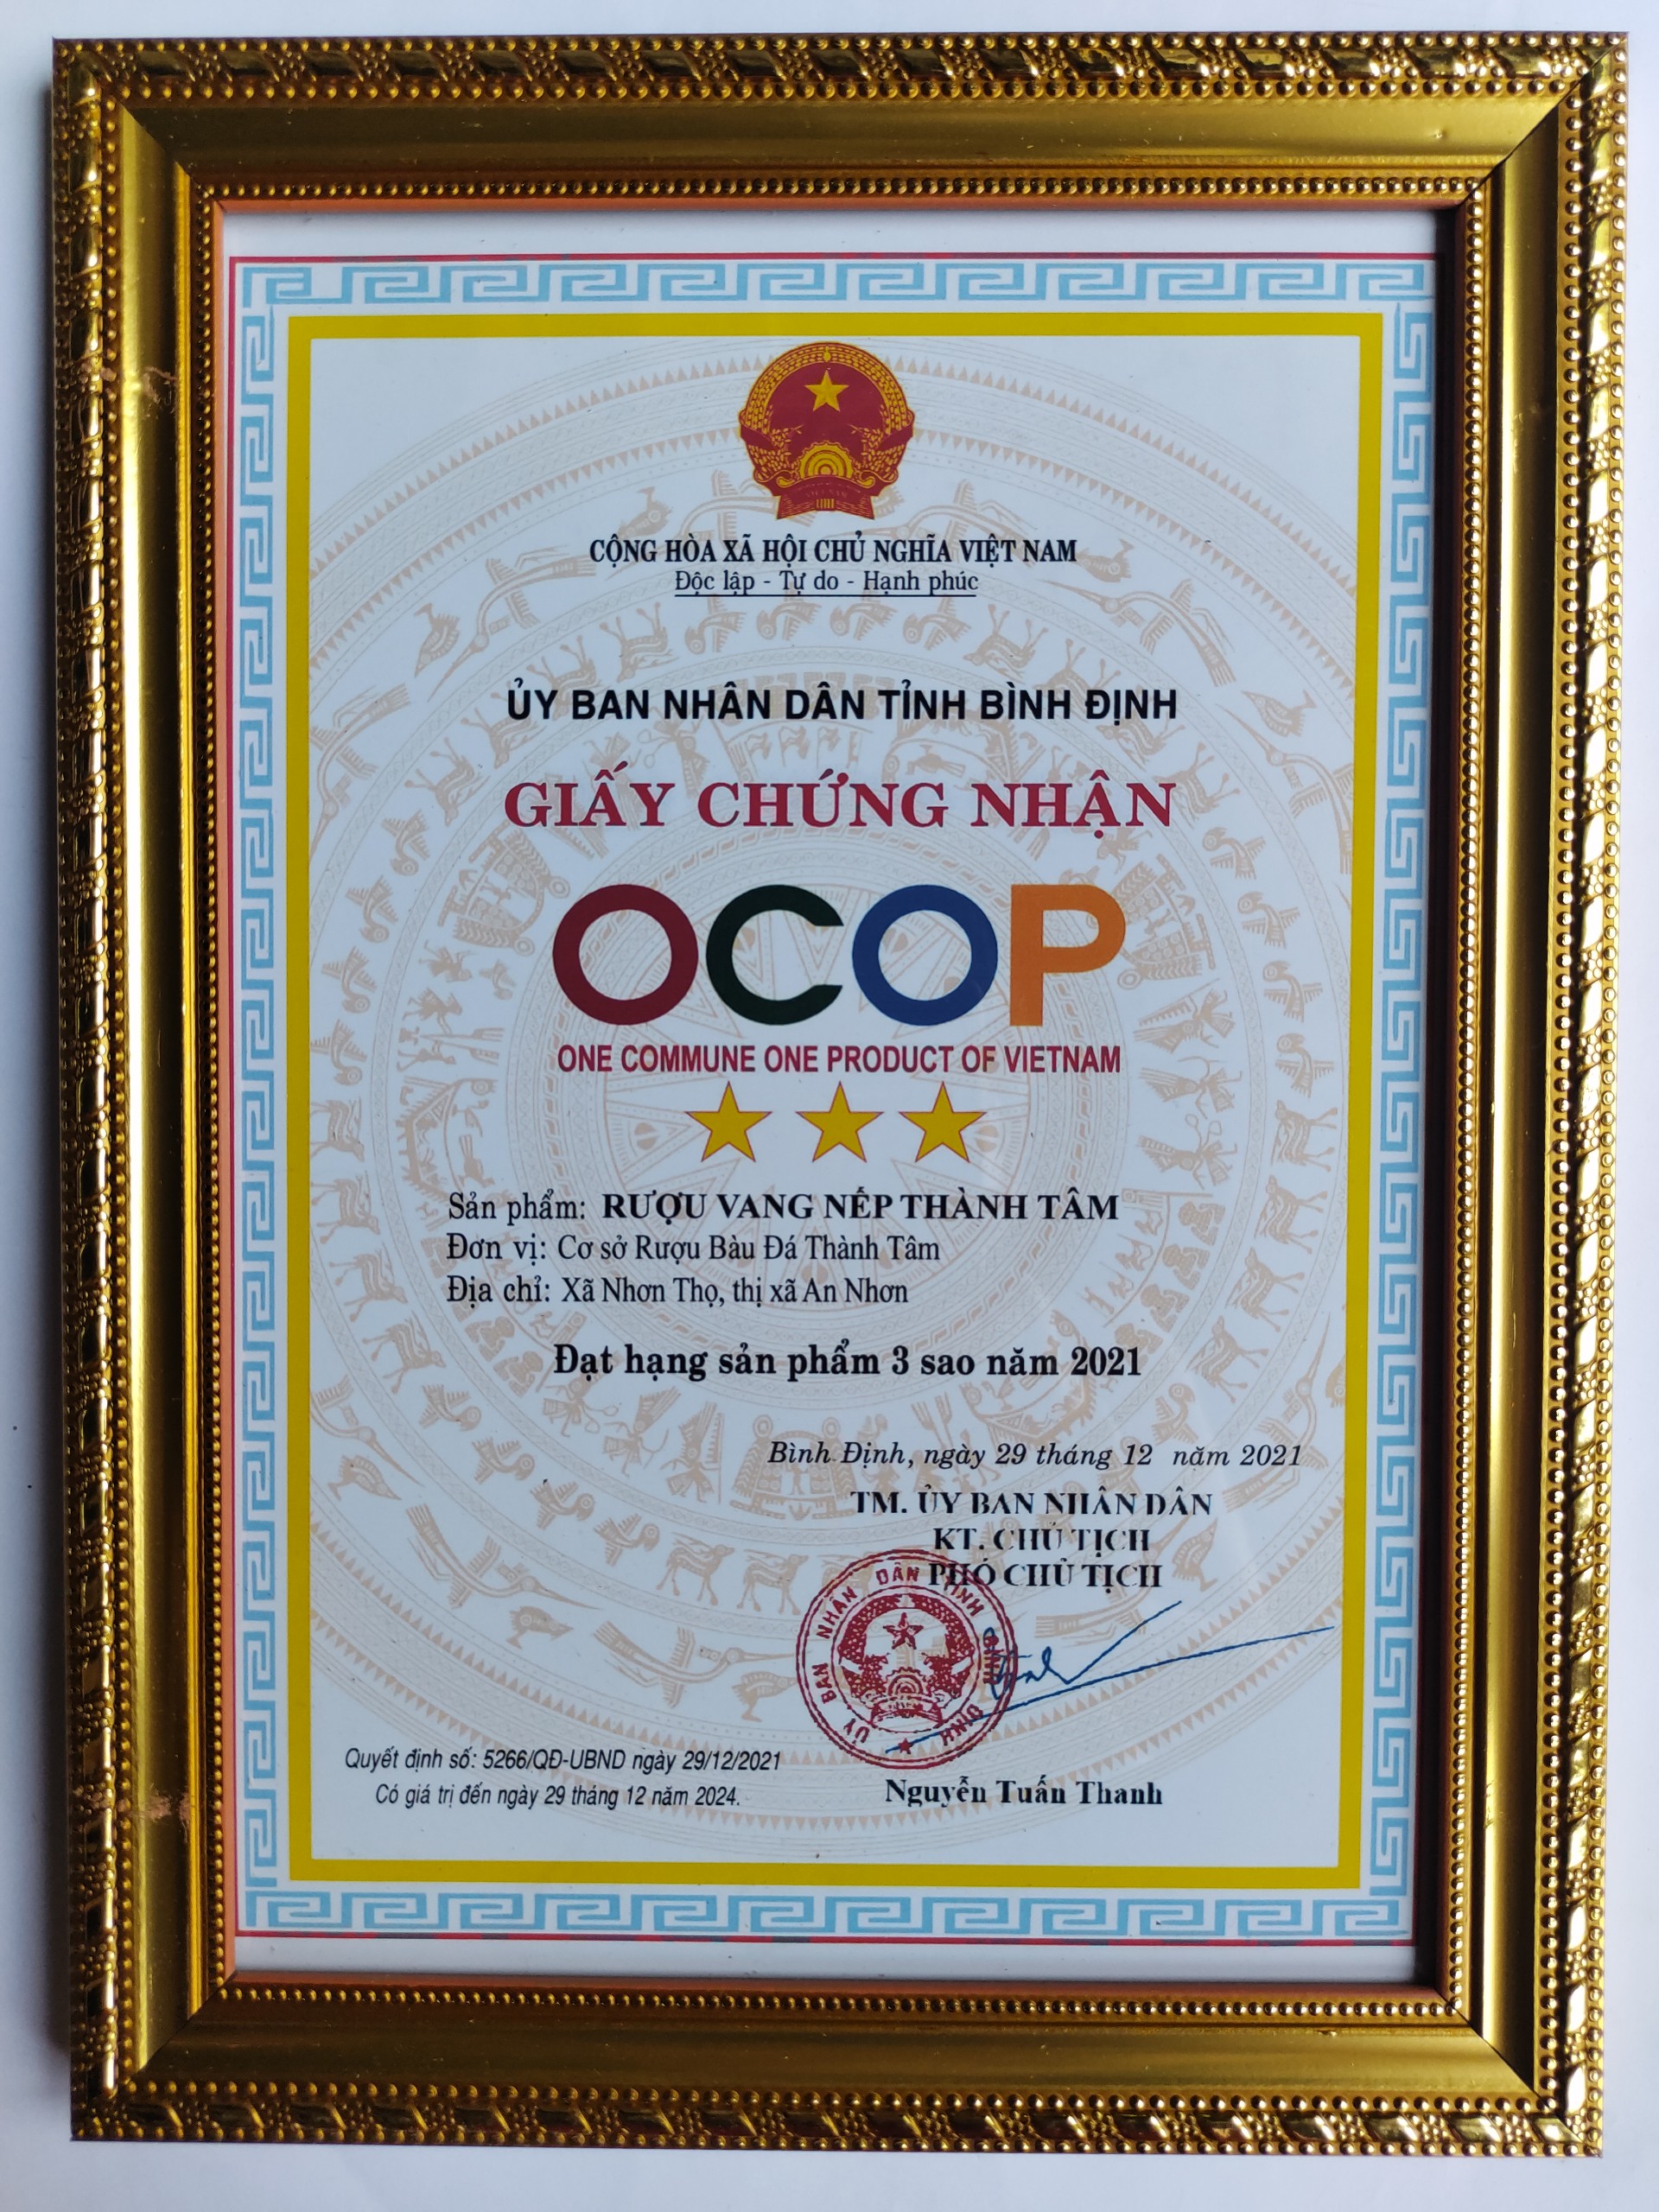 OCOP 3 sao - Cơ Sở Rượu Bàu Đá Nguyễn Thành Tâm